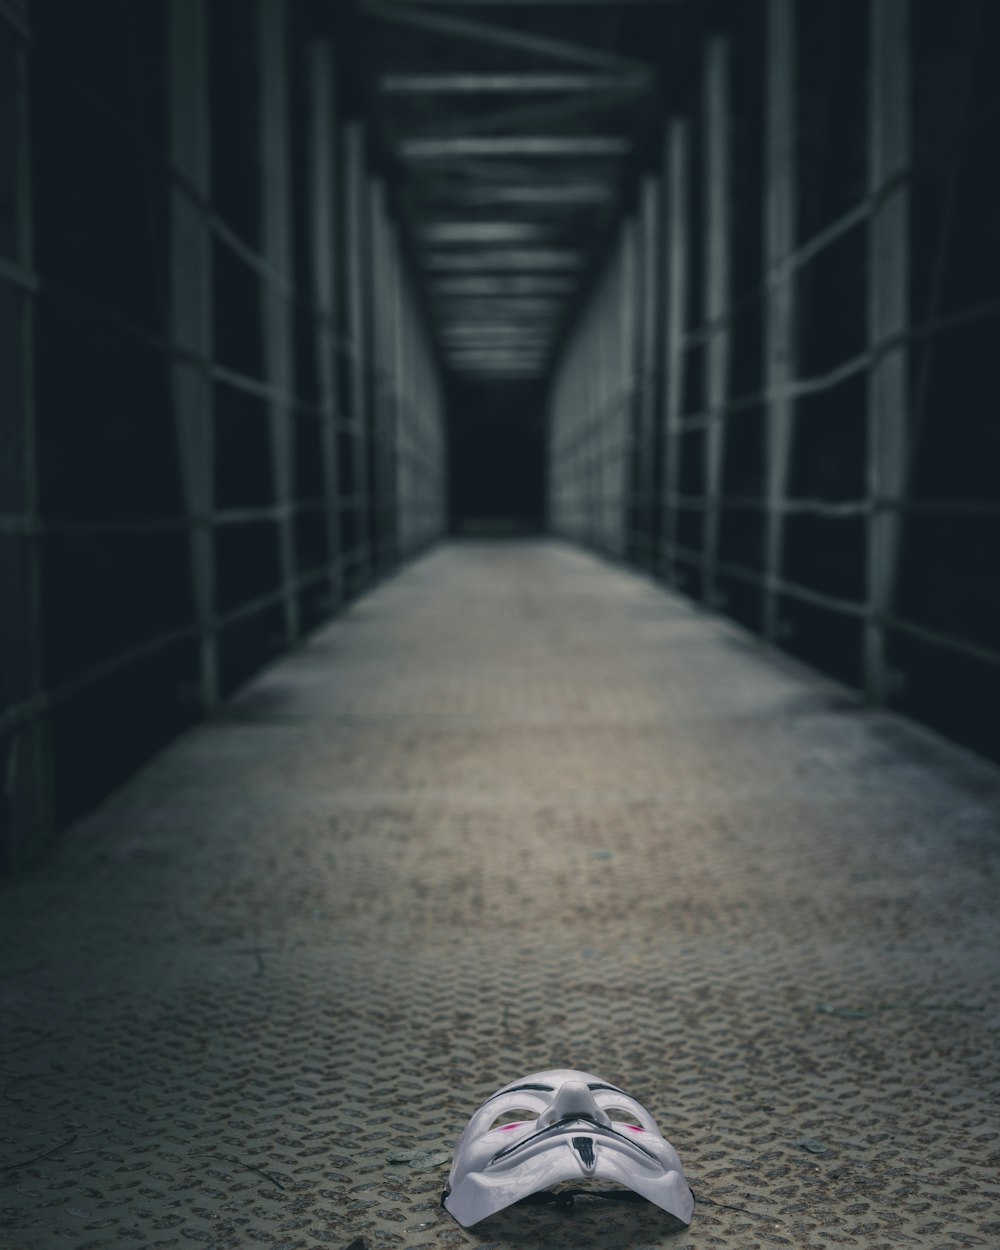 Foto in scala di grigi di una persona in un tunnel